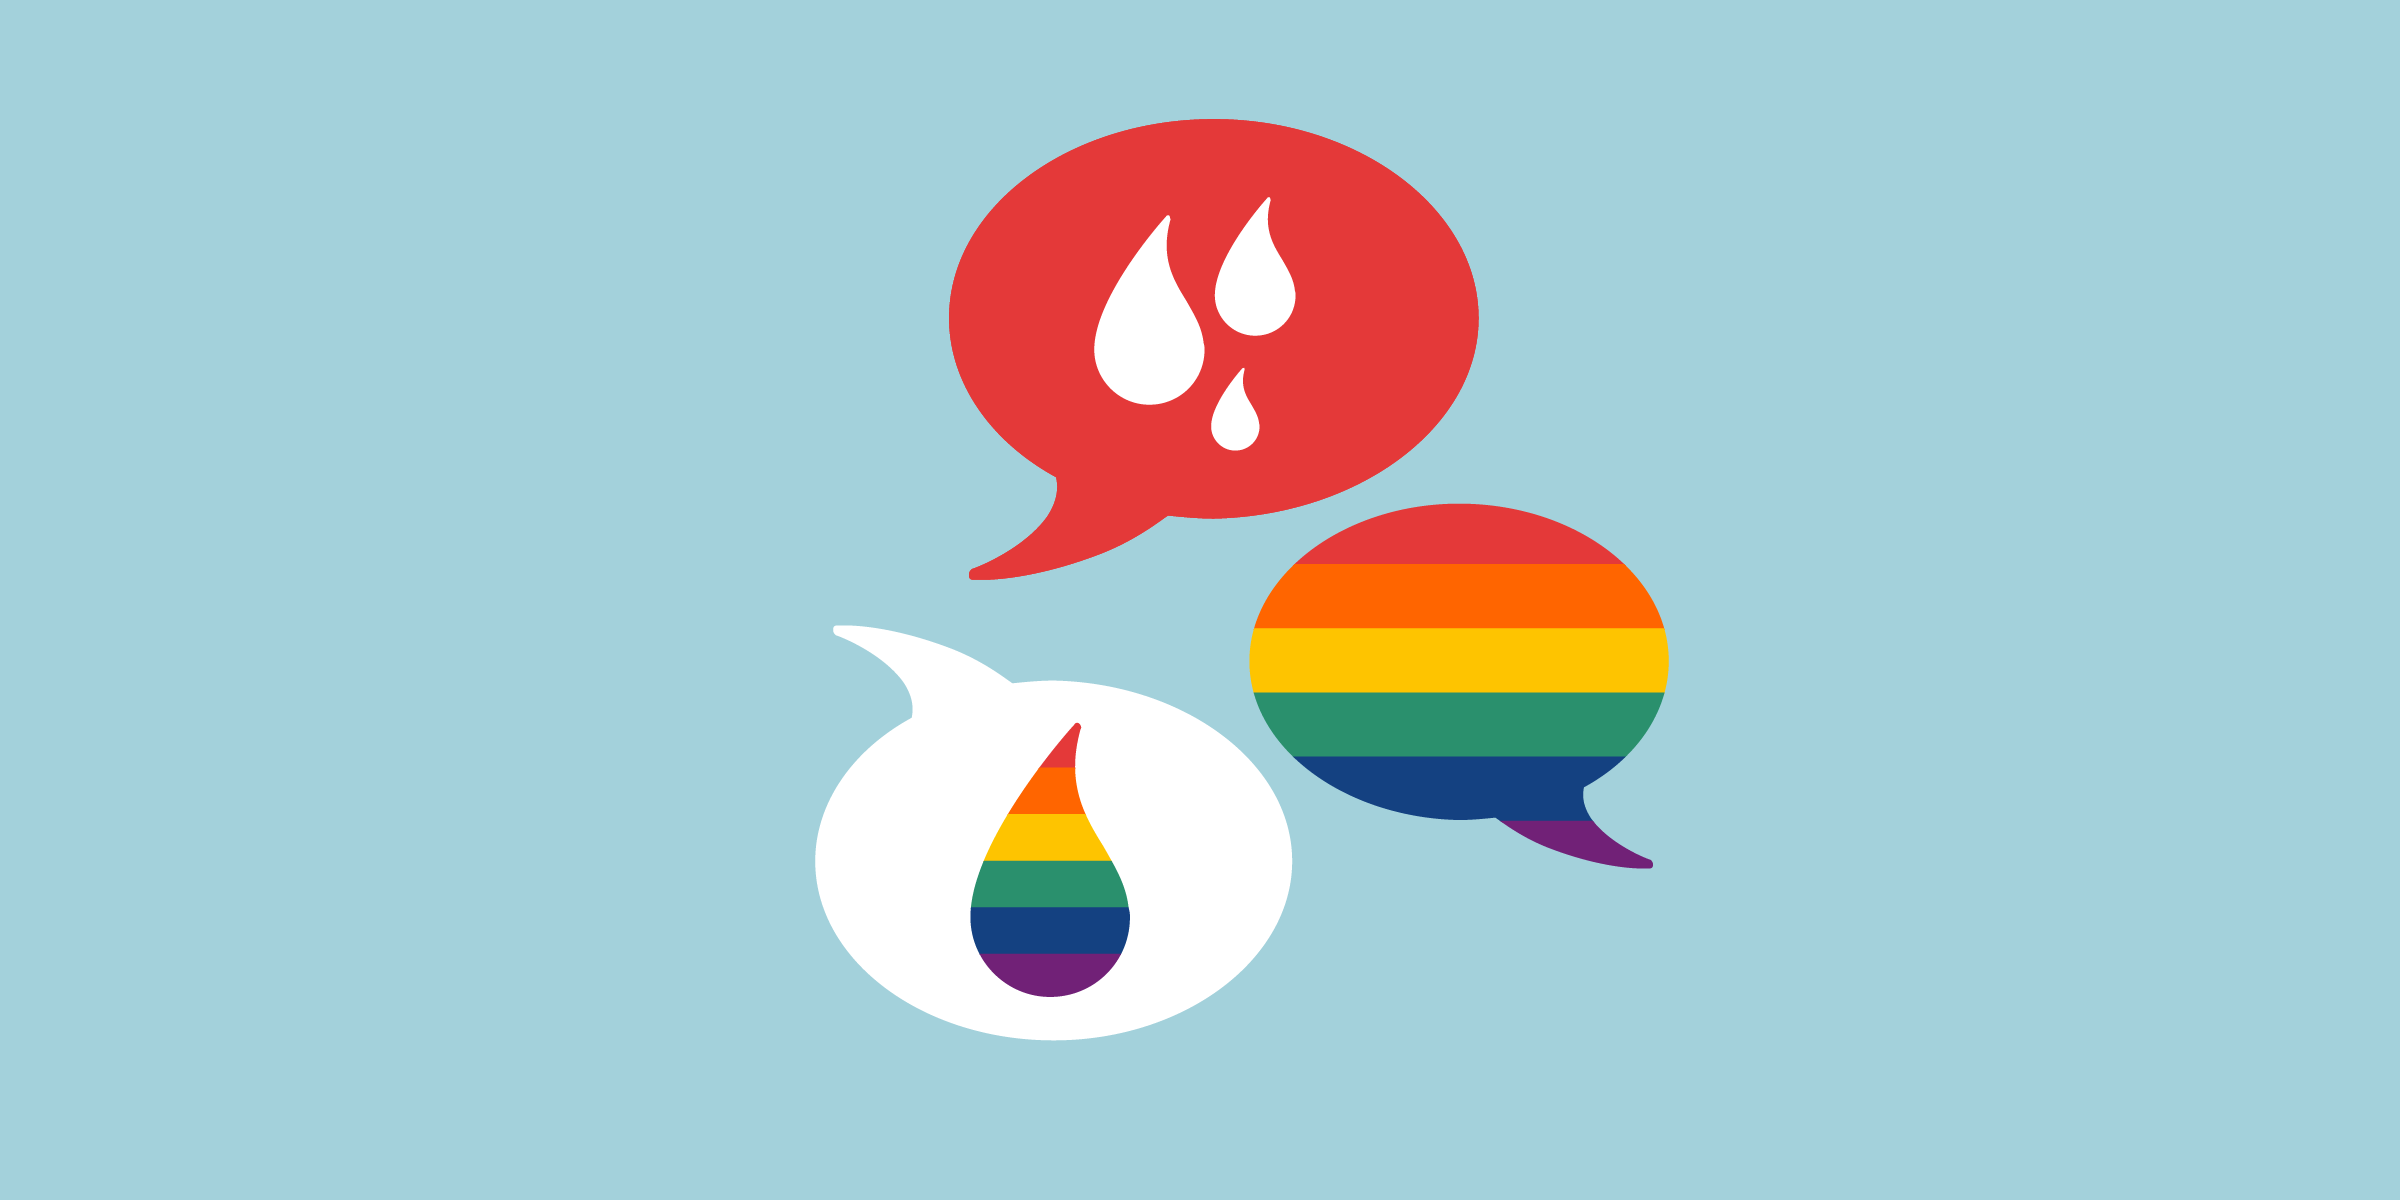 Símbolos de conversación con gotas de sangre menstrual y el arcoíris del movimiento LGBTQIA +.